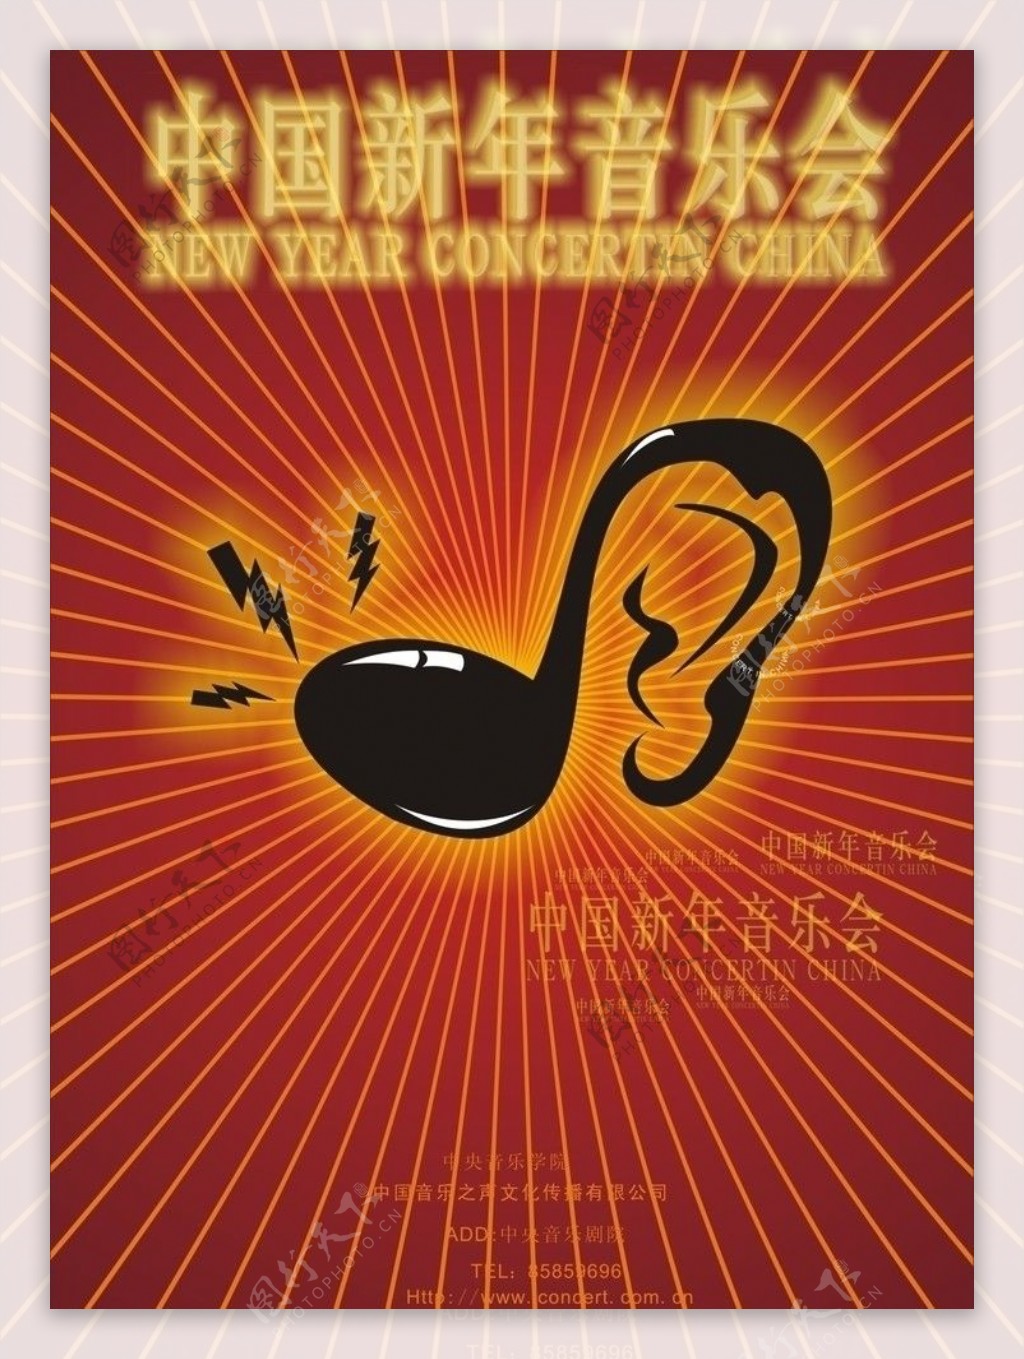 中国新年音乐会图片